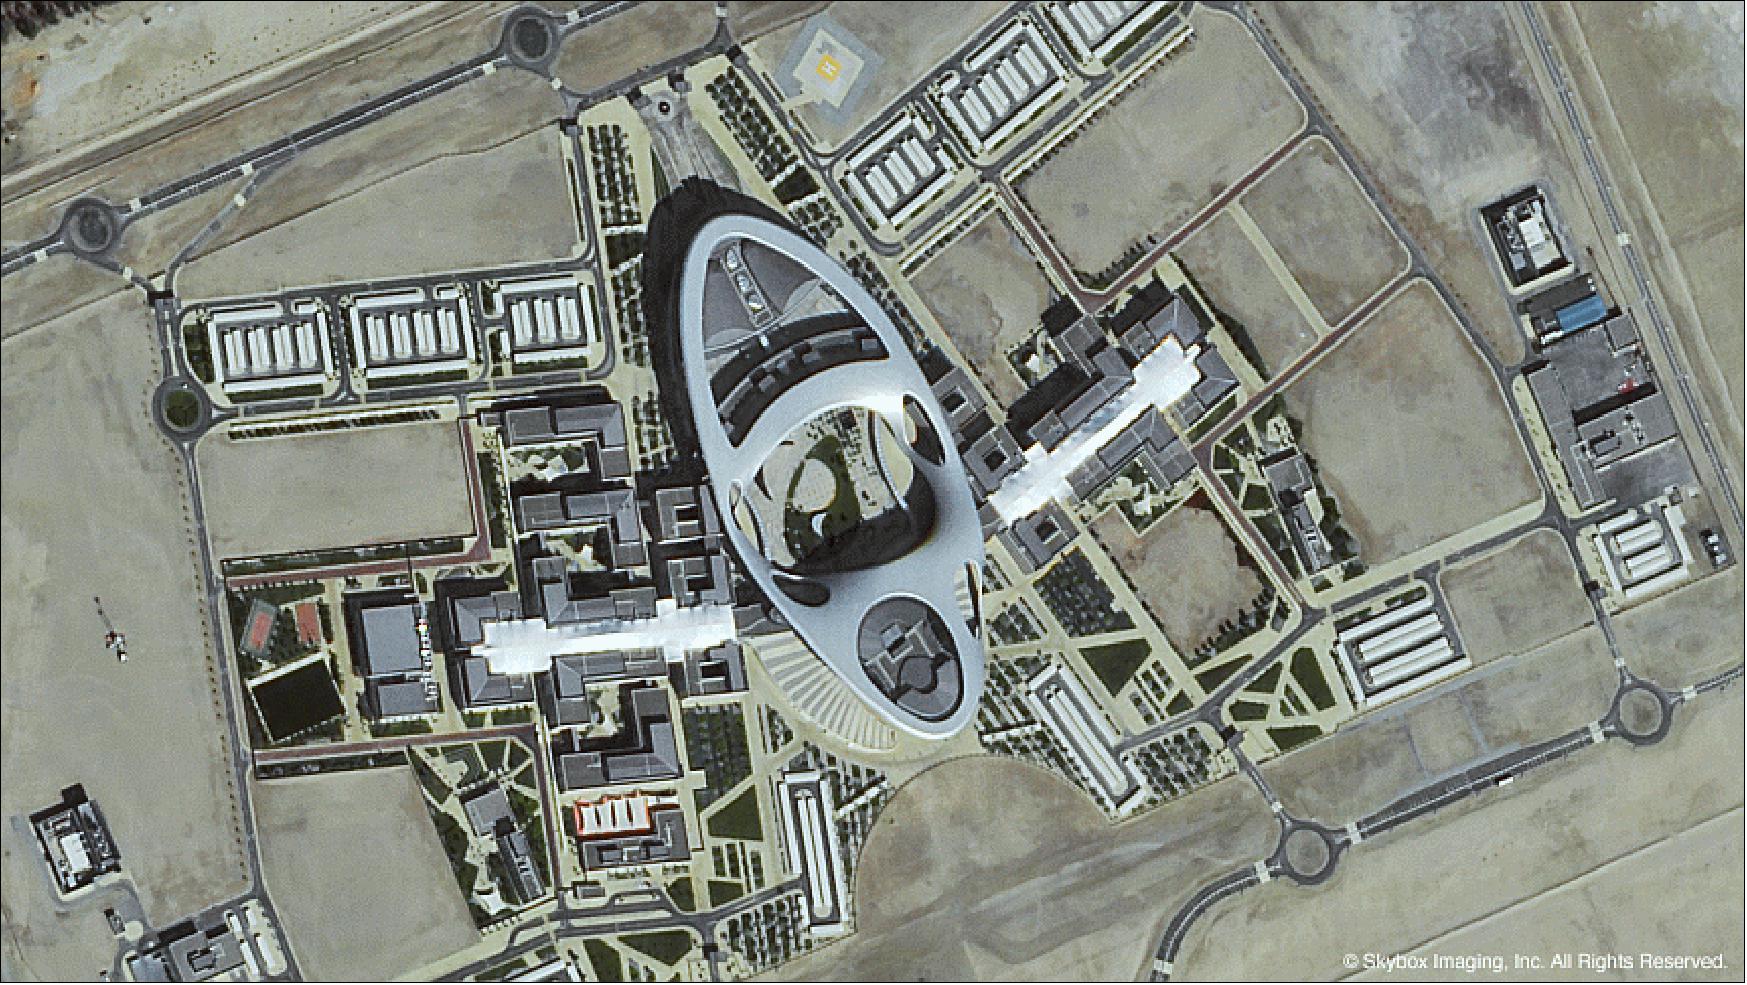 Figure 33: SkySat-1 image of Zayed University in Abu Dhabi, UAE (United Arab Emirates), acquired on Dec. 7, 2013 (image credit: Skybox Imaging)